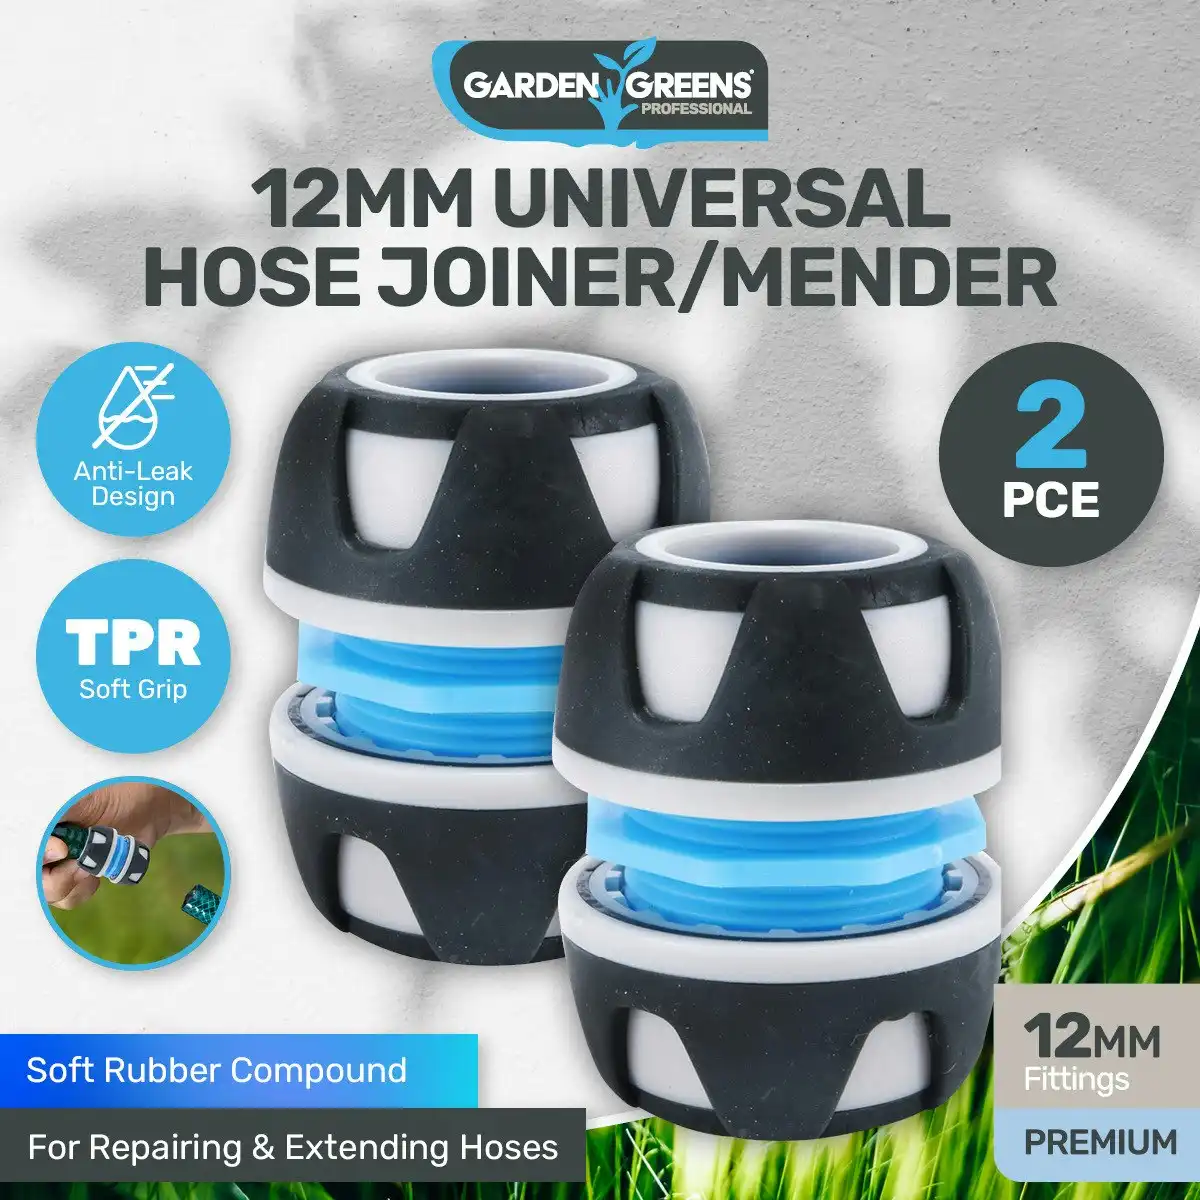 Garden Greens 2PCE Hose Joiner/Mender Premium Quality Anti - Leak Design 12mm